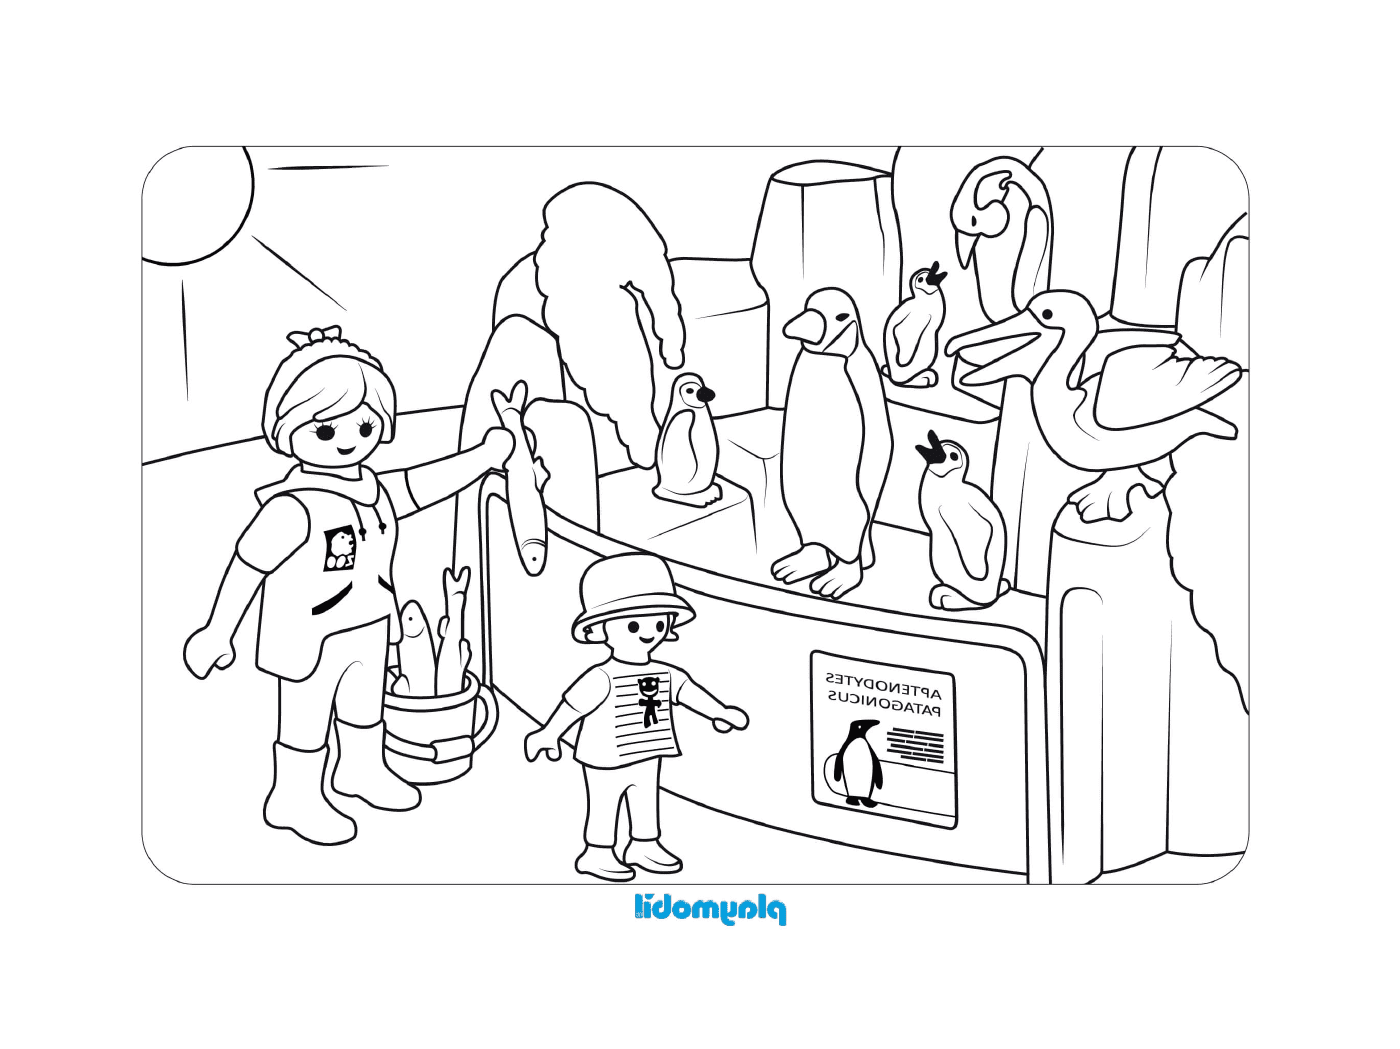  Muitos pinguins nesta cena de Playmobil 